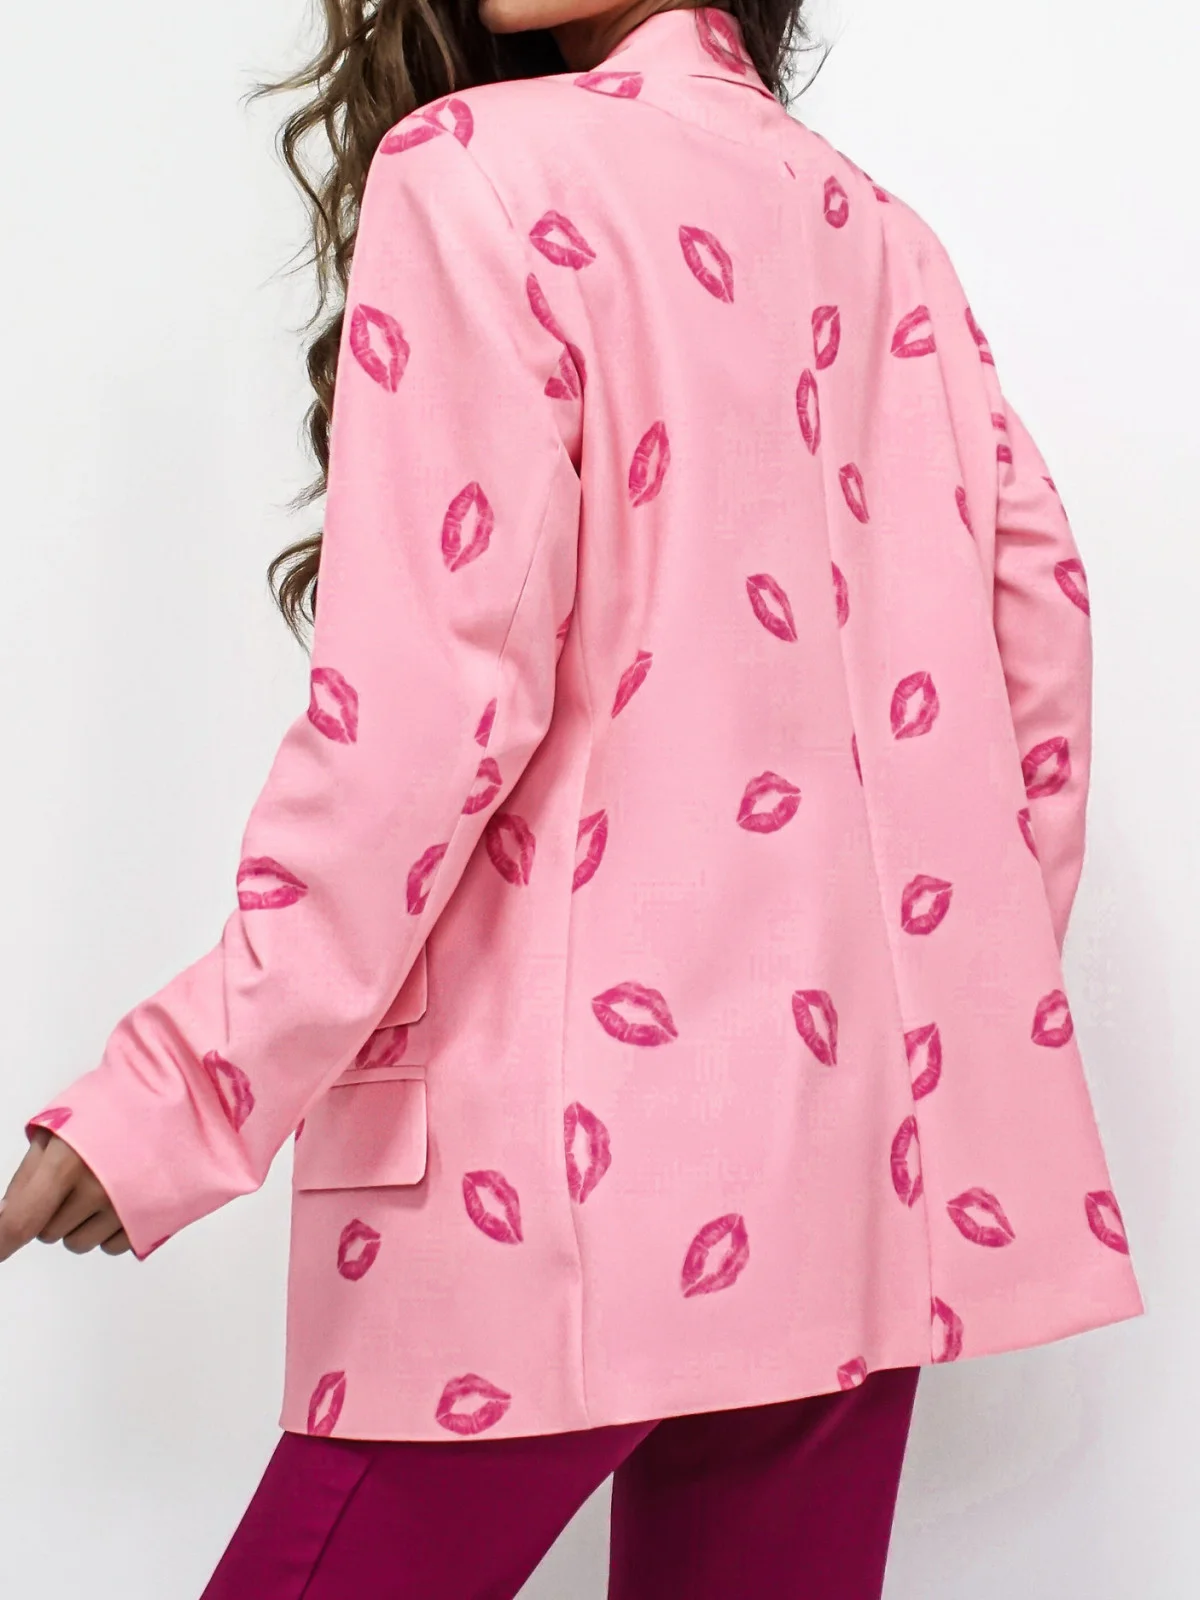 Jackets and coats - Baby Pink Blazer Jacket Trinity